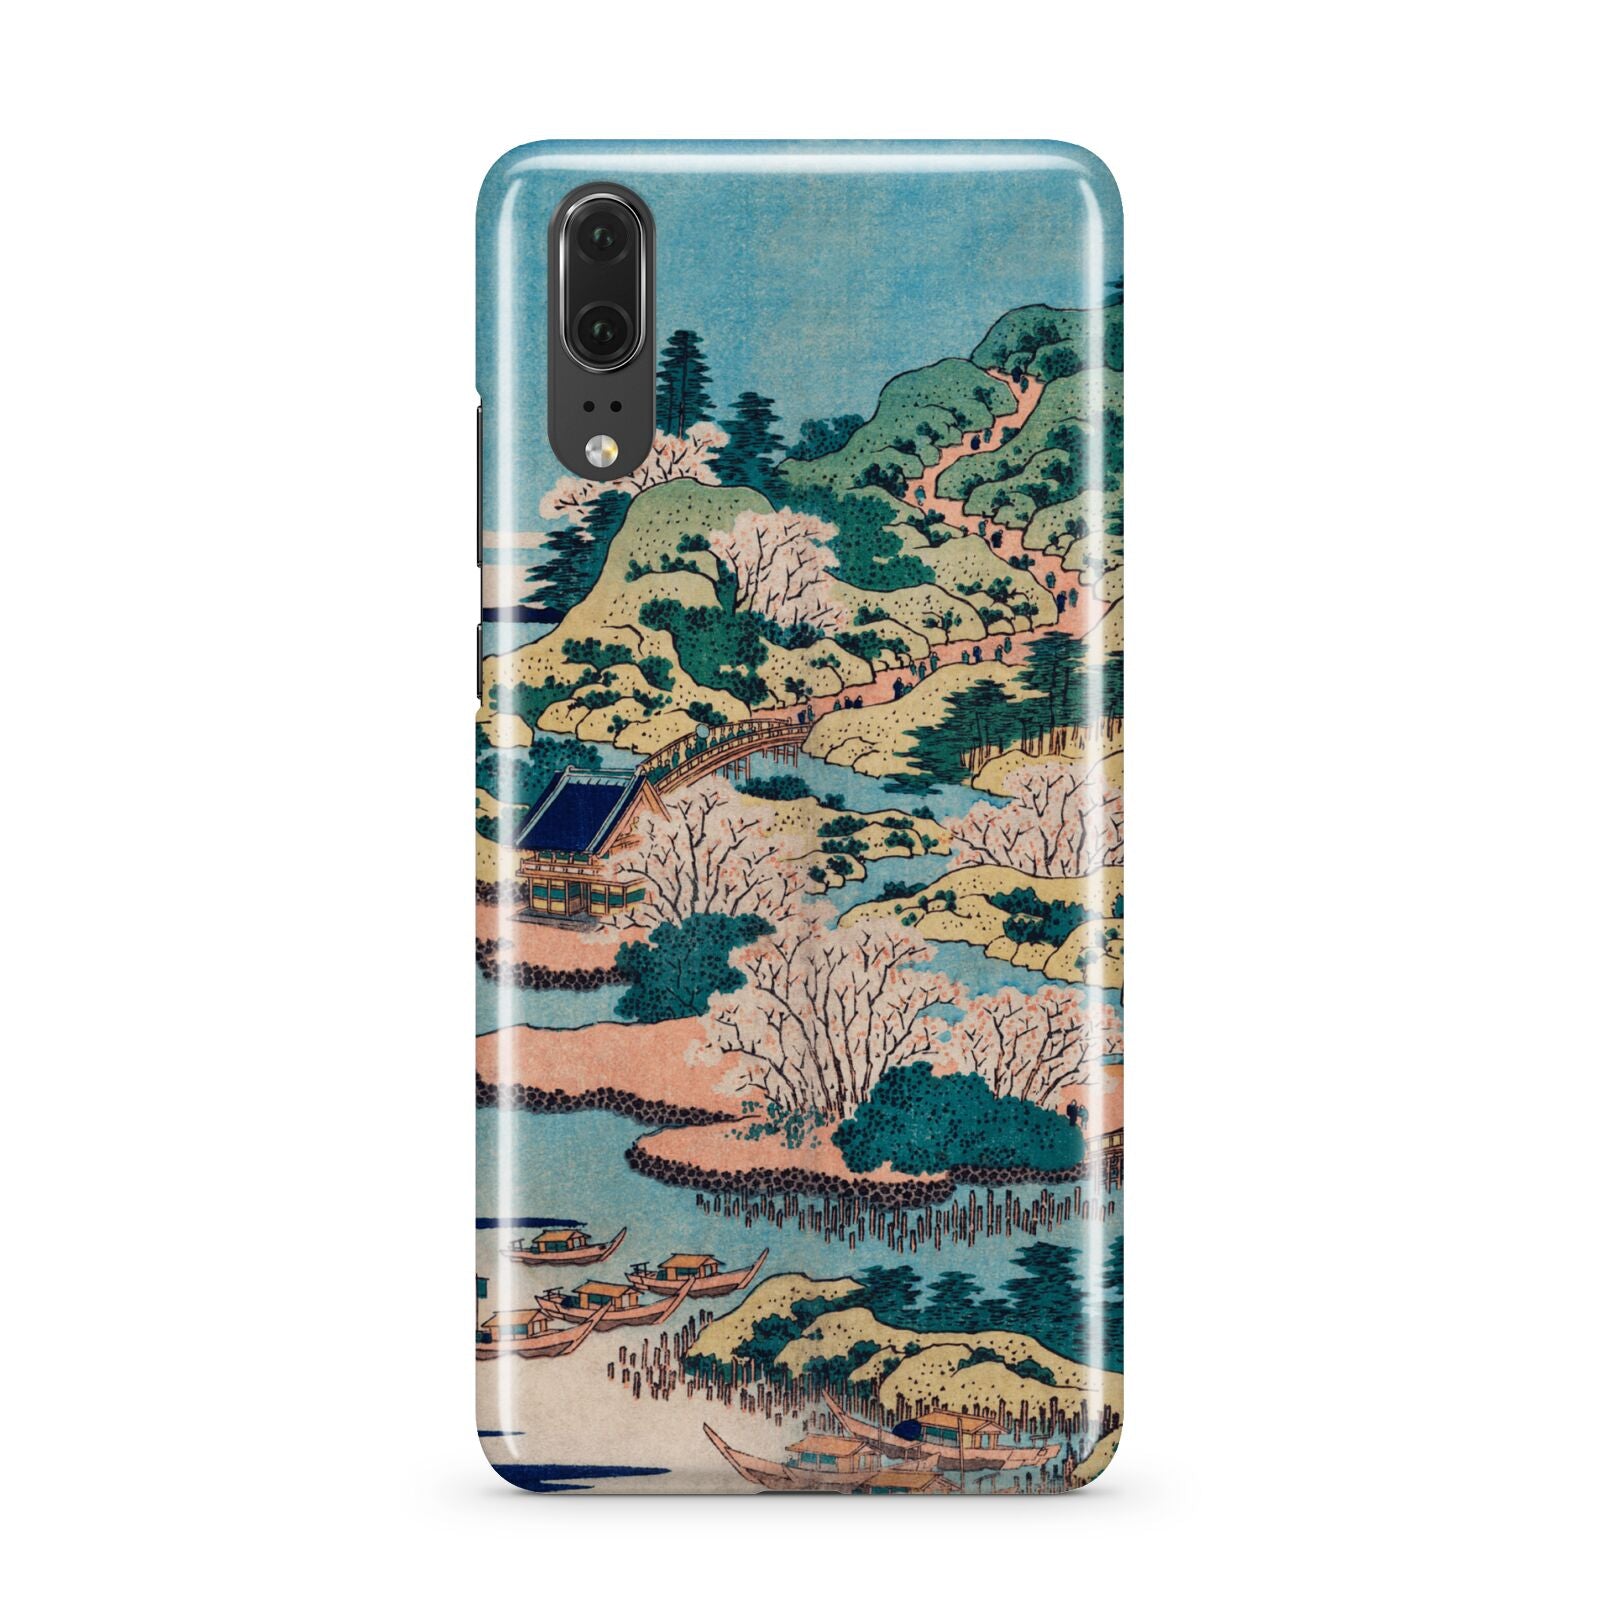 Coastal Community By Katsushika Hokusai Huawei P20 Phone Case